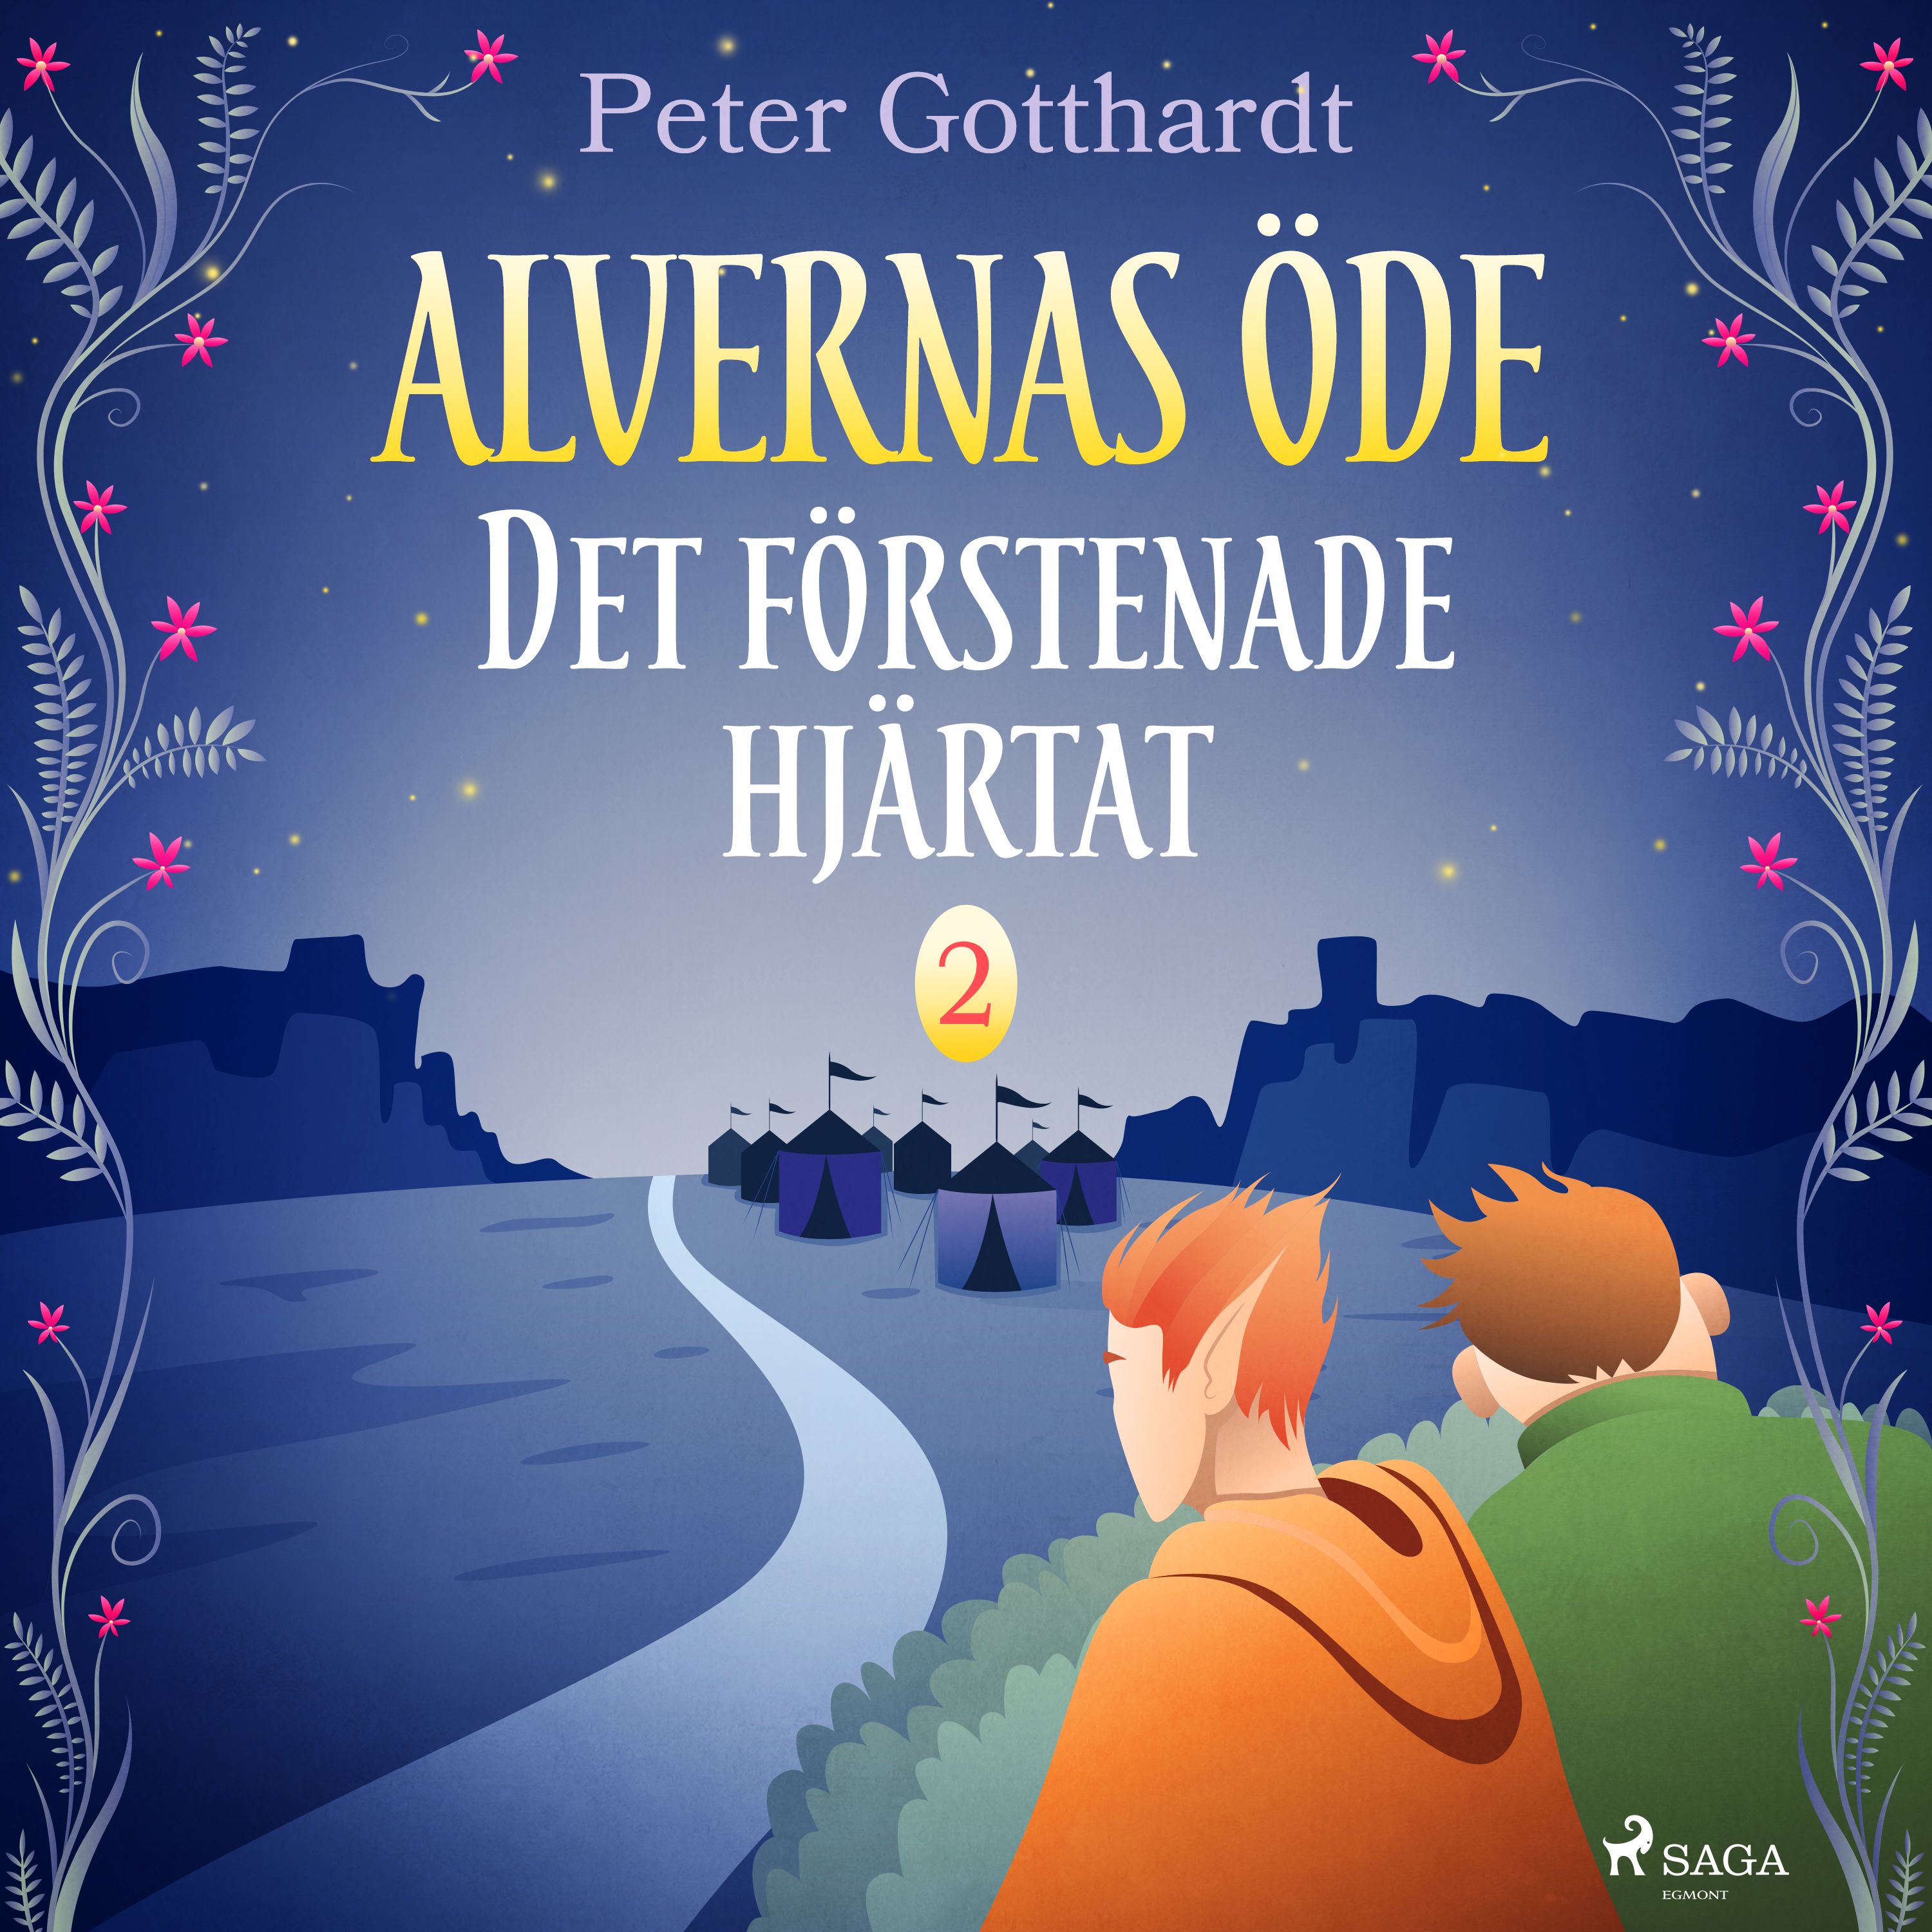 Alvernas öde 2: Det förstenade hjärtat, ljudbok av Peter Gotthardt